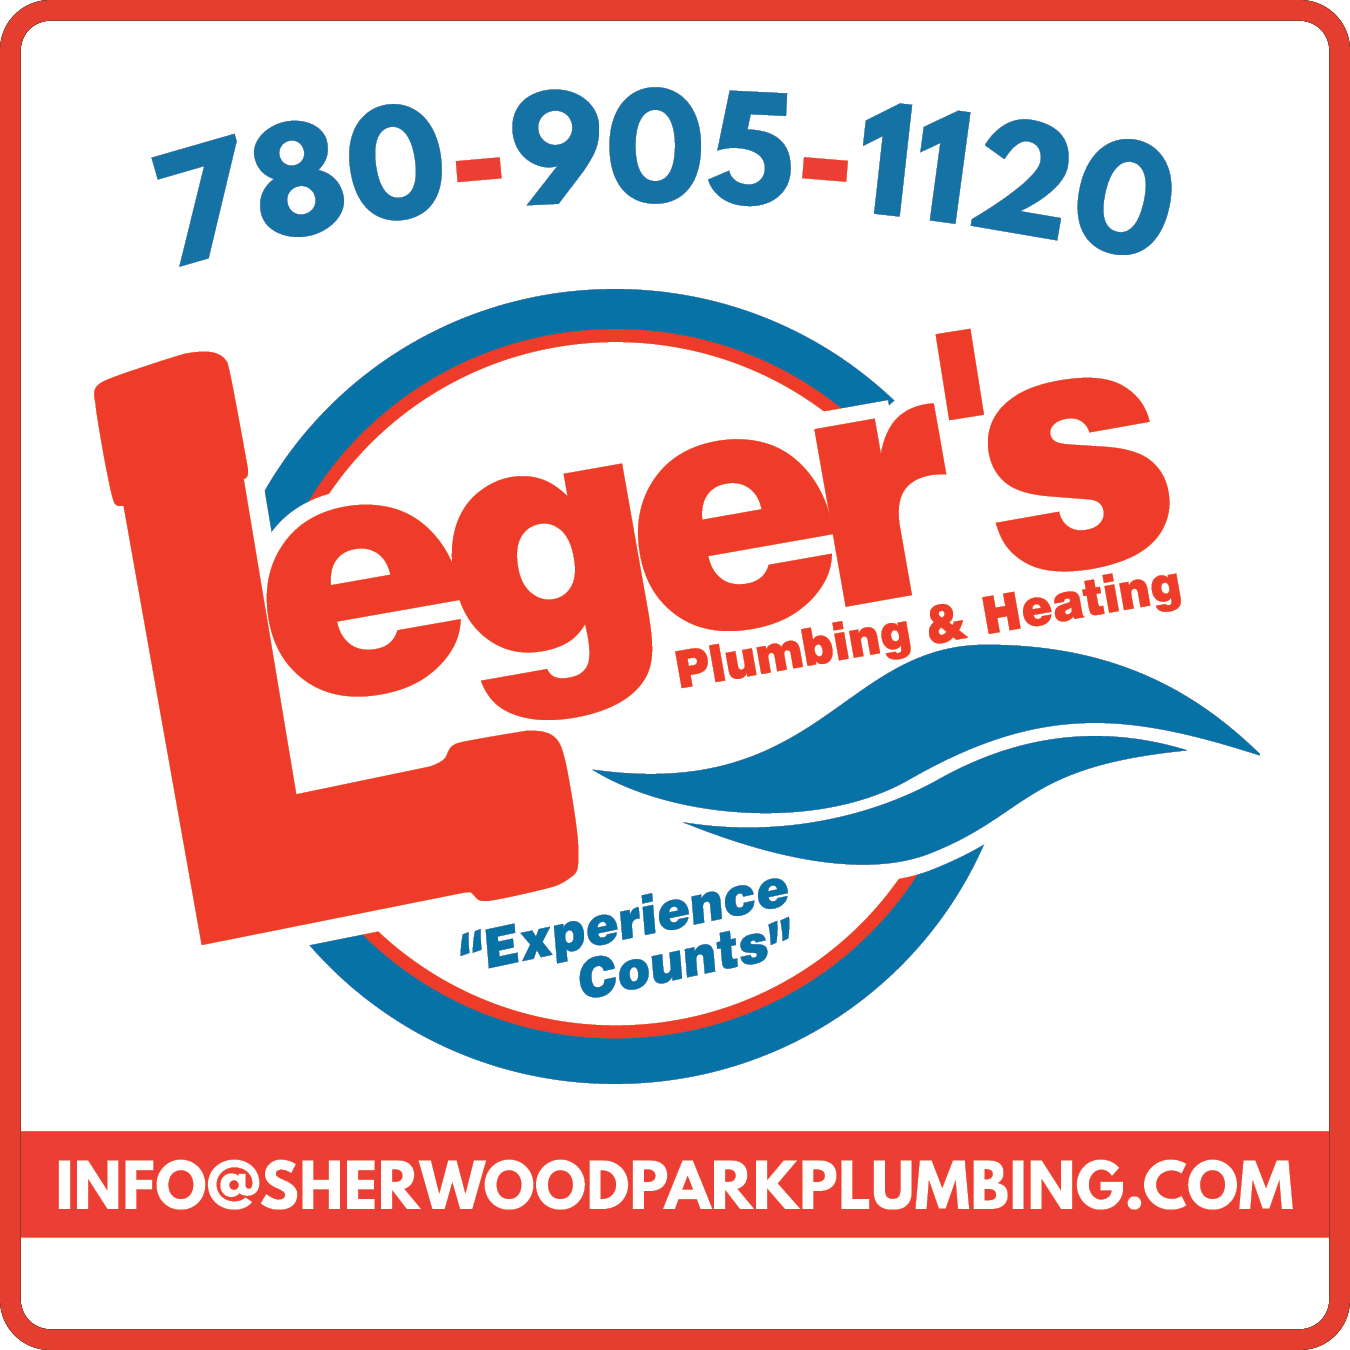 Leger's Plumbing & Heating